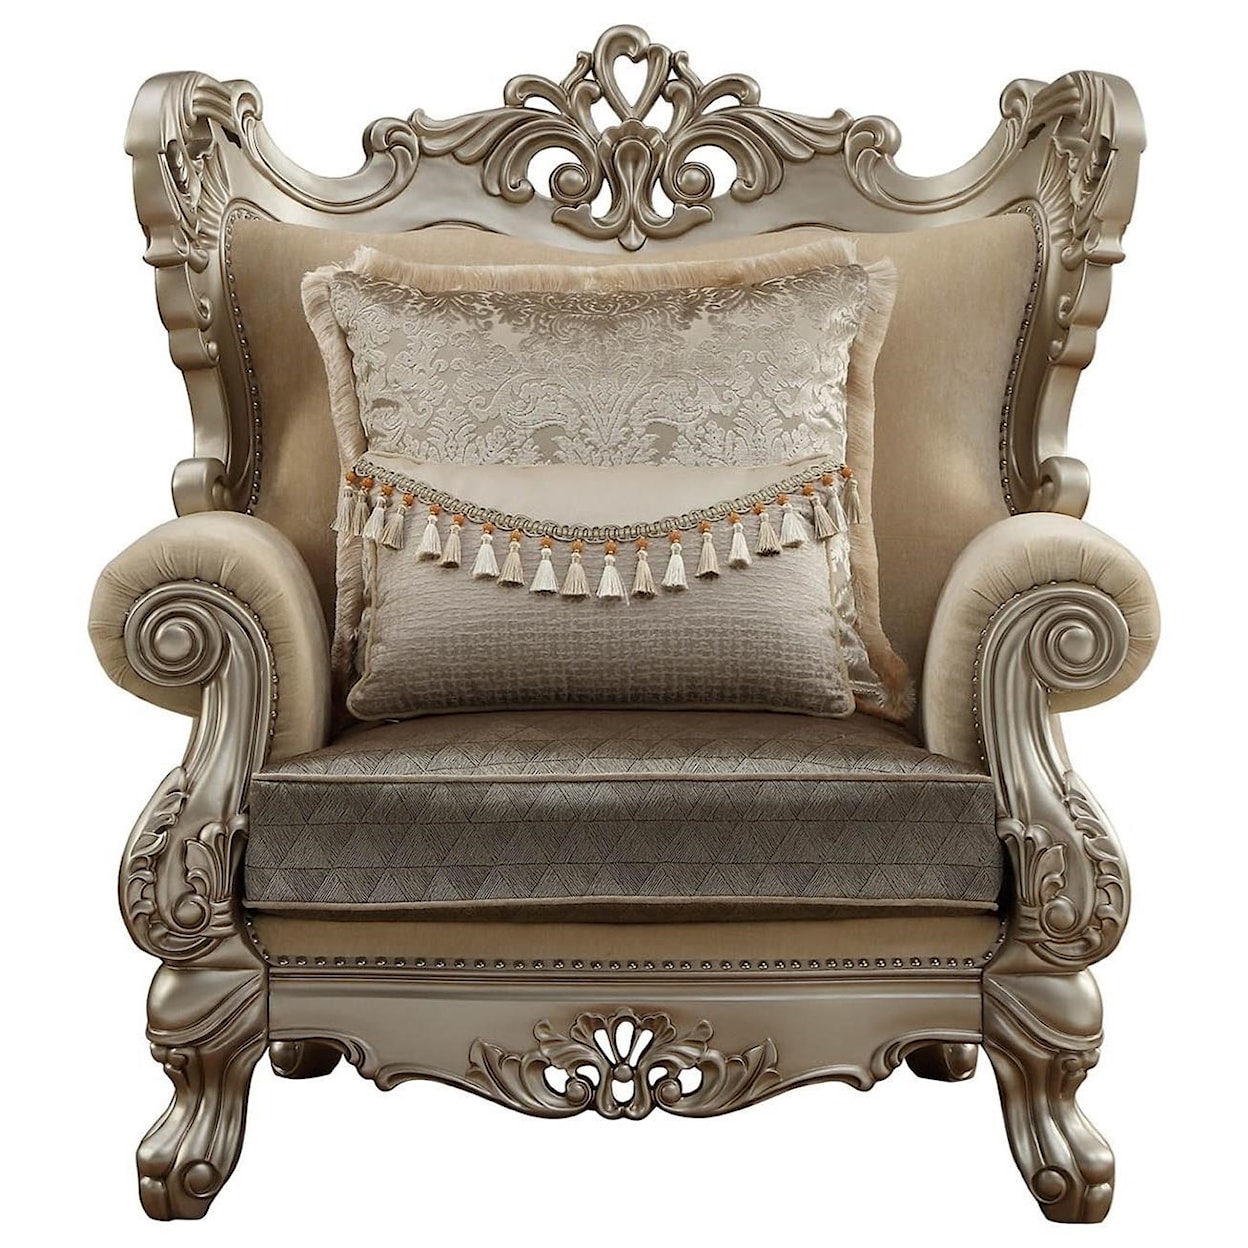 Acme Furniture Ranita Chair w/2 Pillows